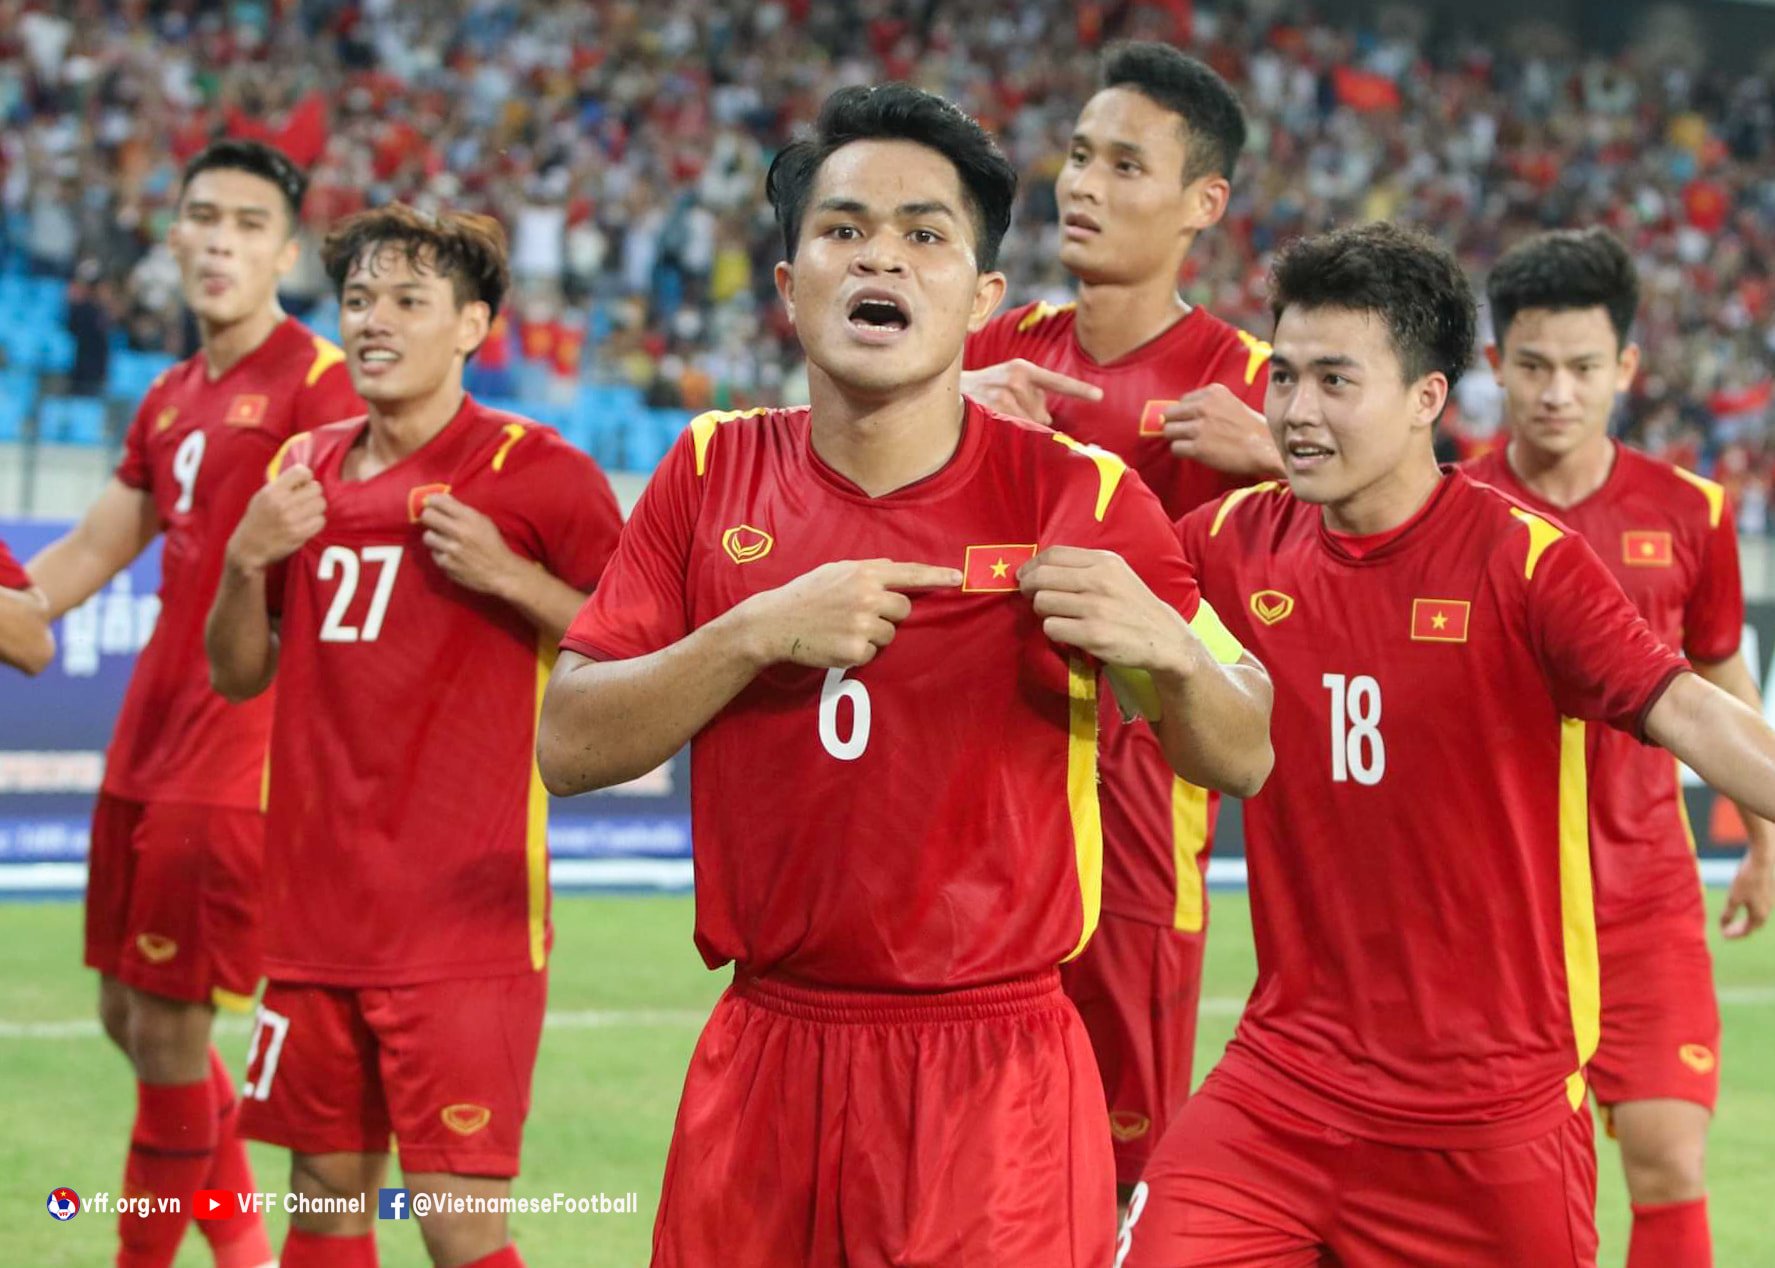 Chúc mừng đội tuyển U23 Việt Nam!